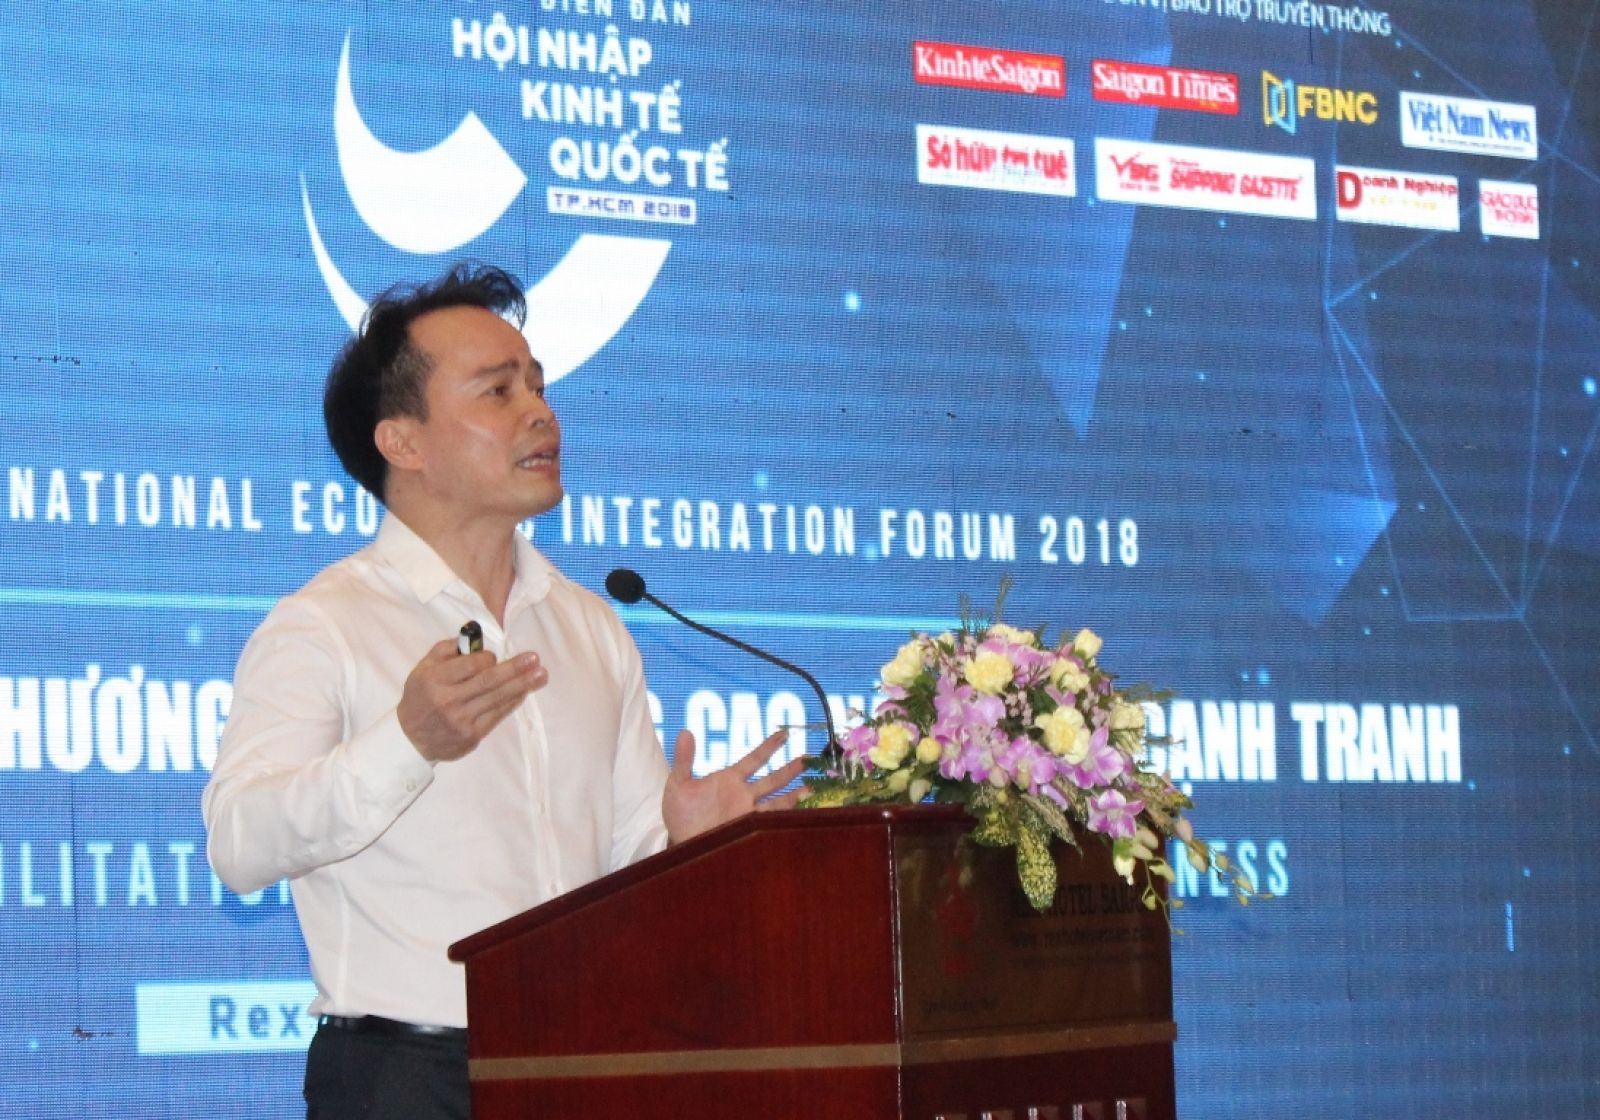 Ông Ngô Chung Khanh, Phó Vụ trưởng Vụ Chính sách thương mại đa biên, Bộ Công Thương thông tin các giải pháp nhằm nâng cao năng lực cạnh tranh cho doanh nghiệp tại diễn đàn